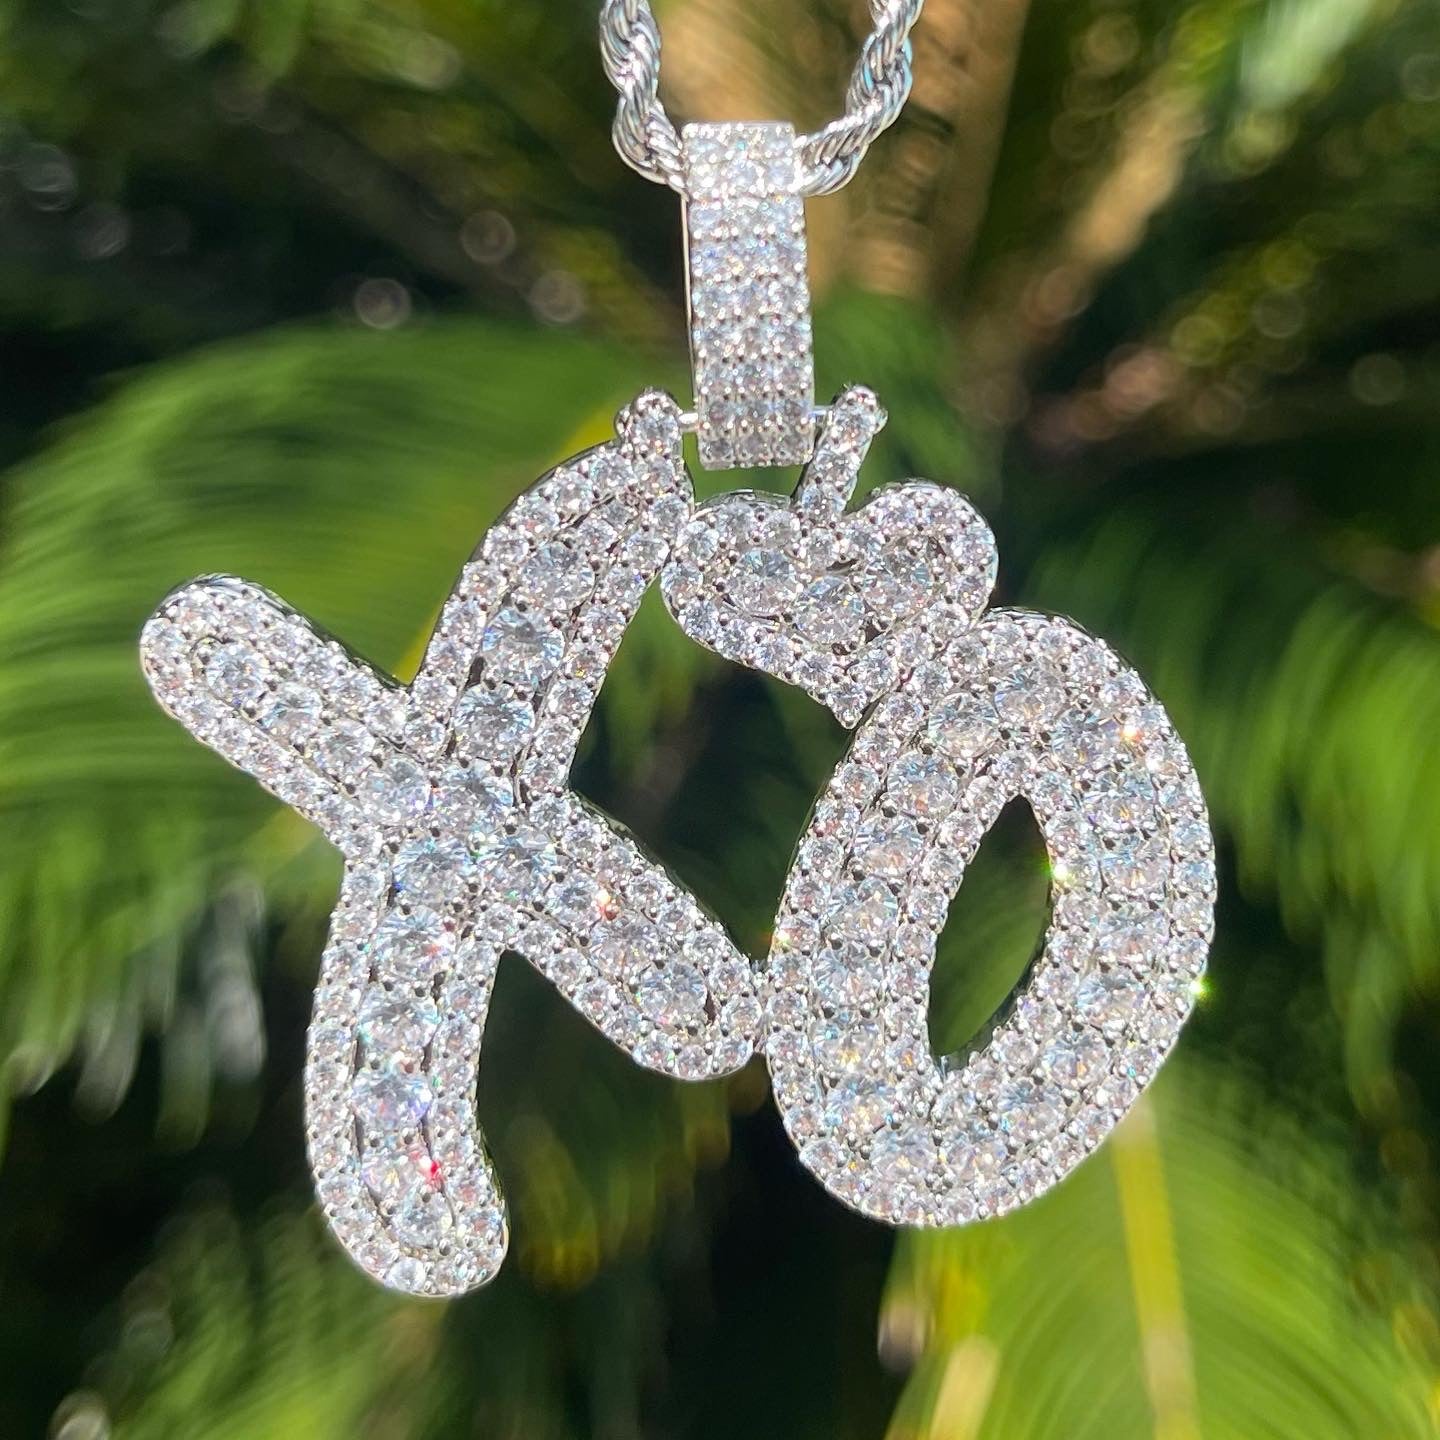 “Xo” Necklace Pendant “Silver”